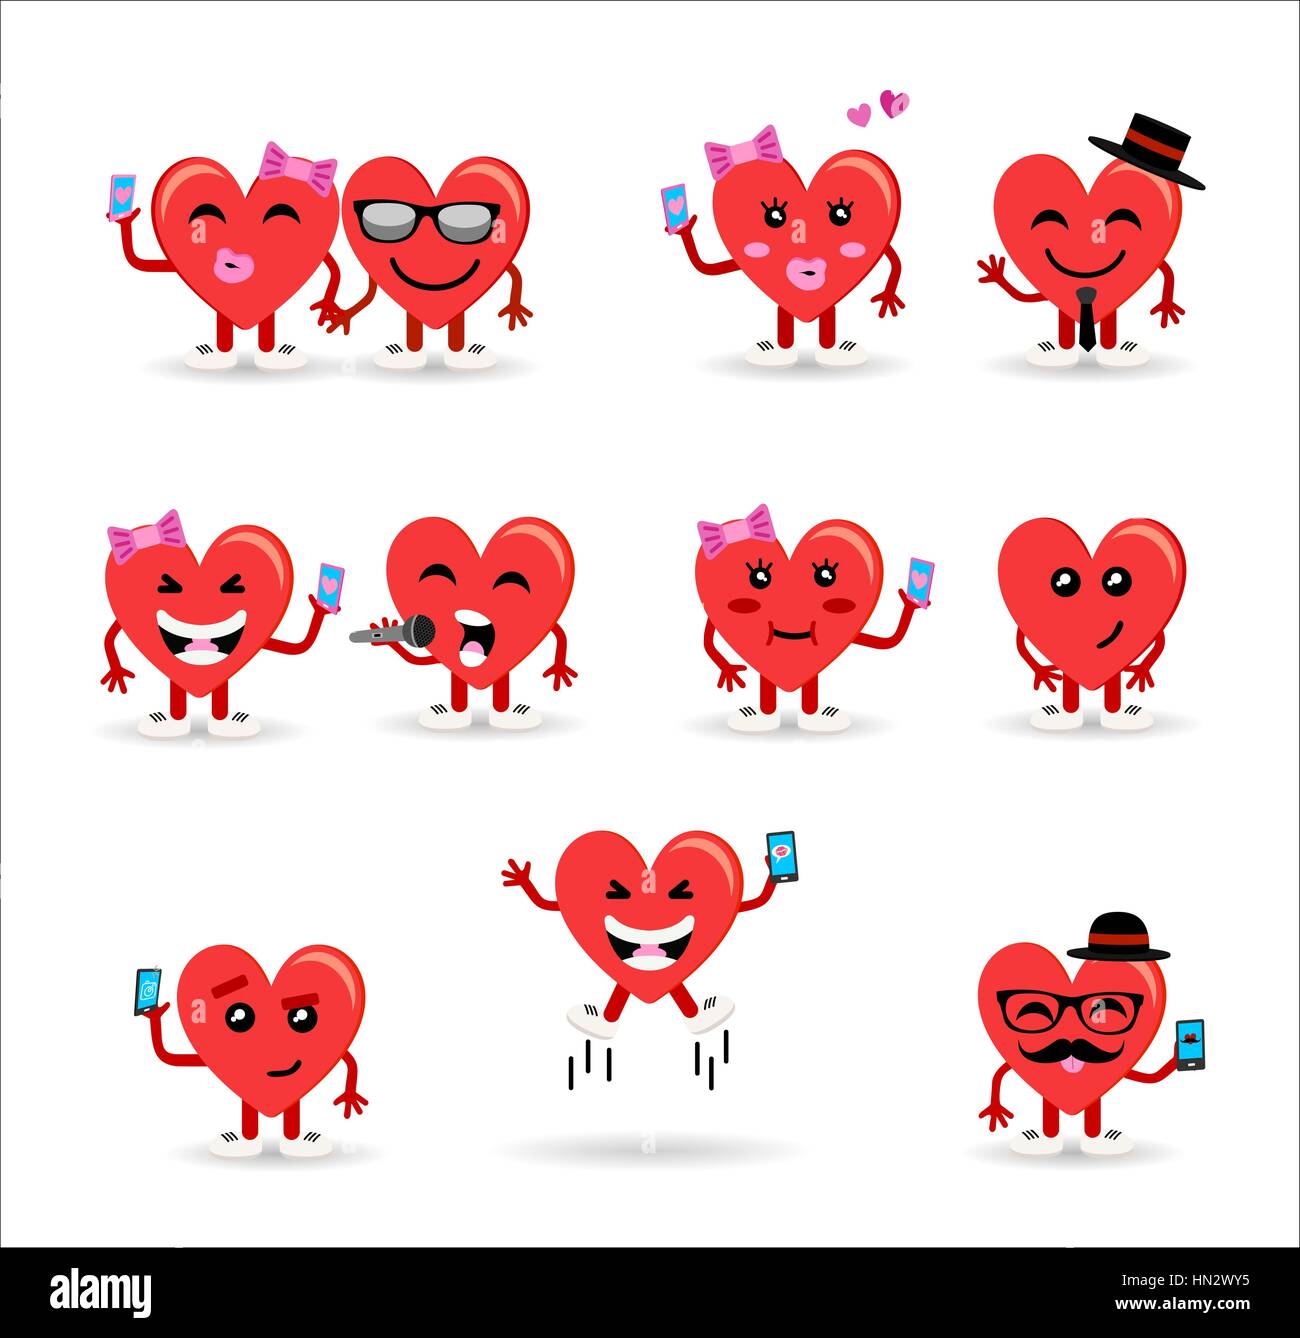 Online Badge Maker  Love heart gif, Animated heart, Online badge maker